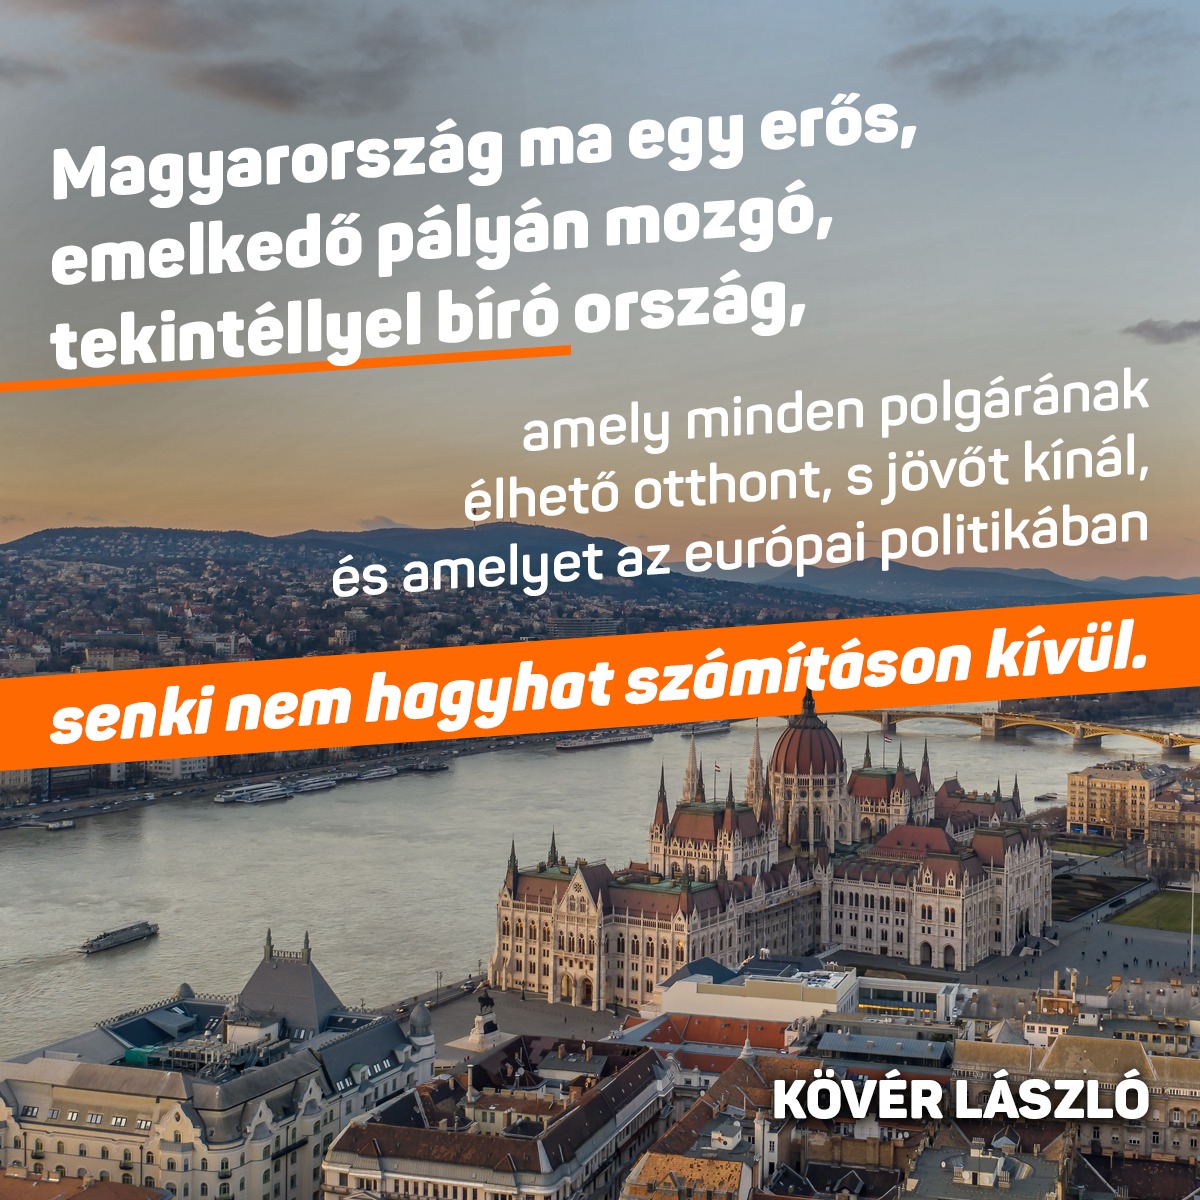 Magyarország ma egy erős, emelkedő pályán mozgó, tekintéllyel bíró ﻿ország, amely minden polgárának élhető otthont s jövőt kínál, és amelyet﻿ az európai politikában senki nem hagyhat számításon kívül.